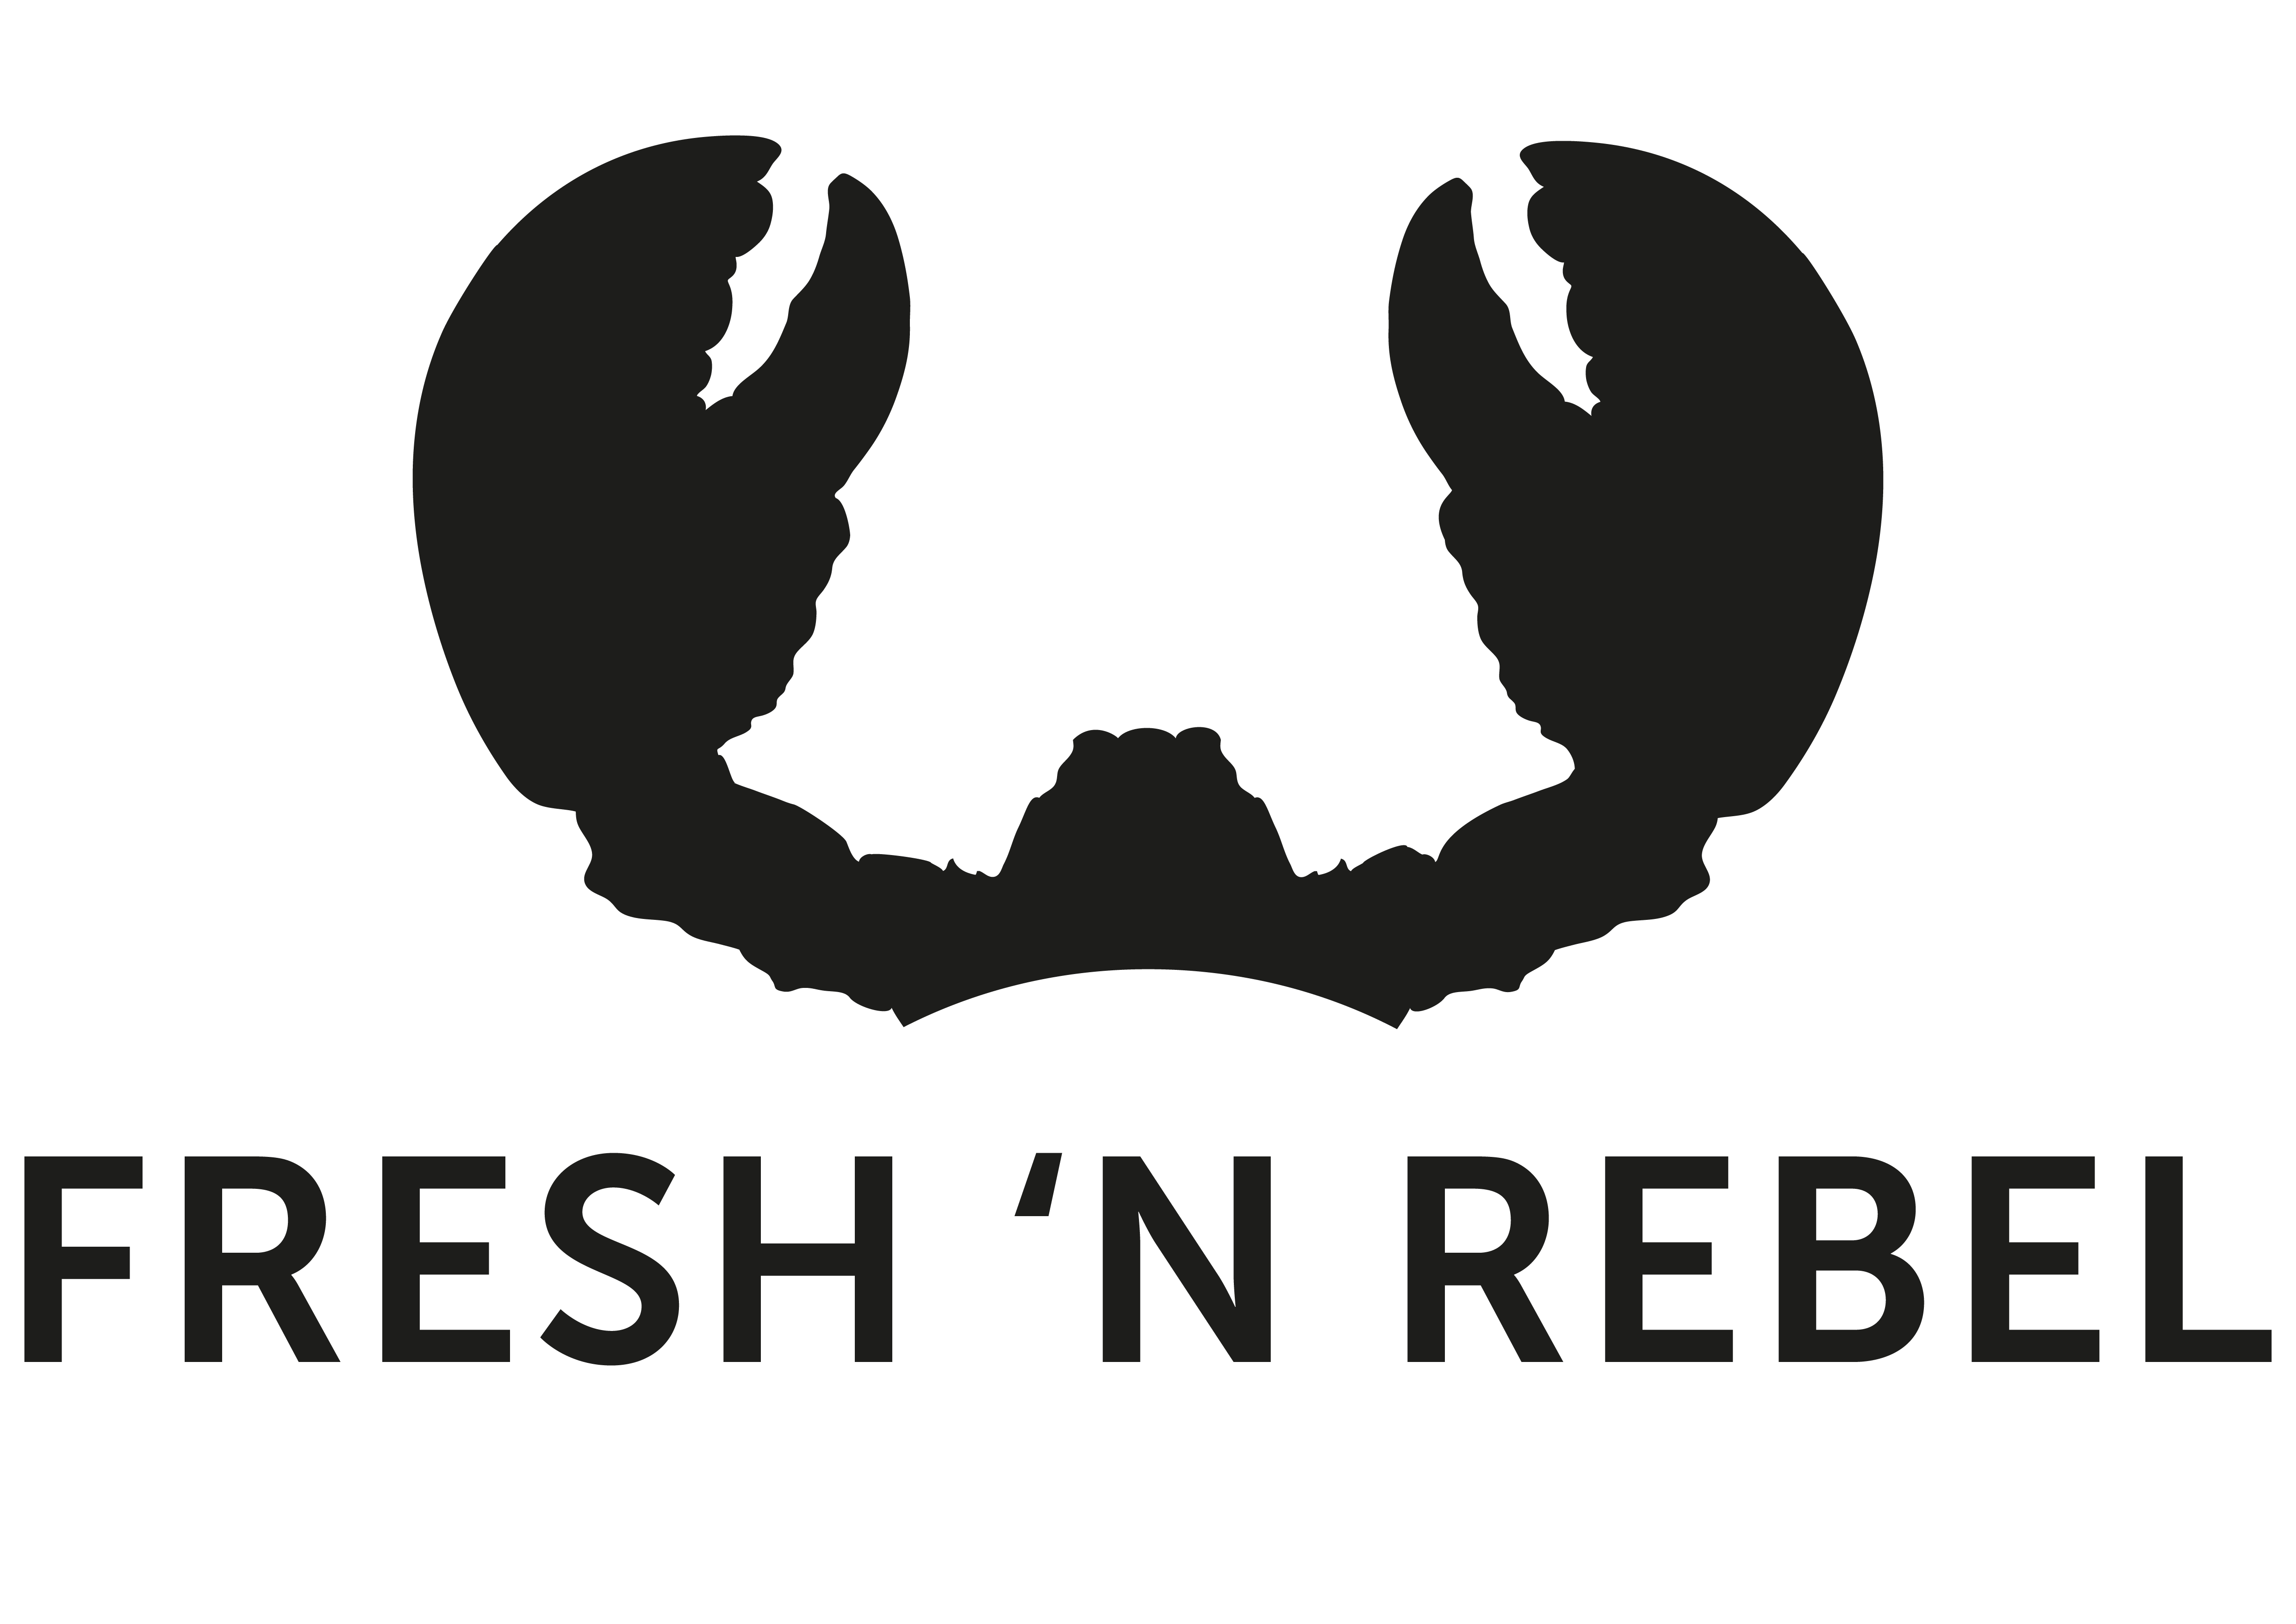 Fresh n Rebel